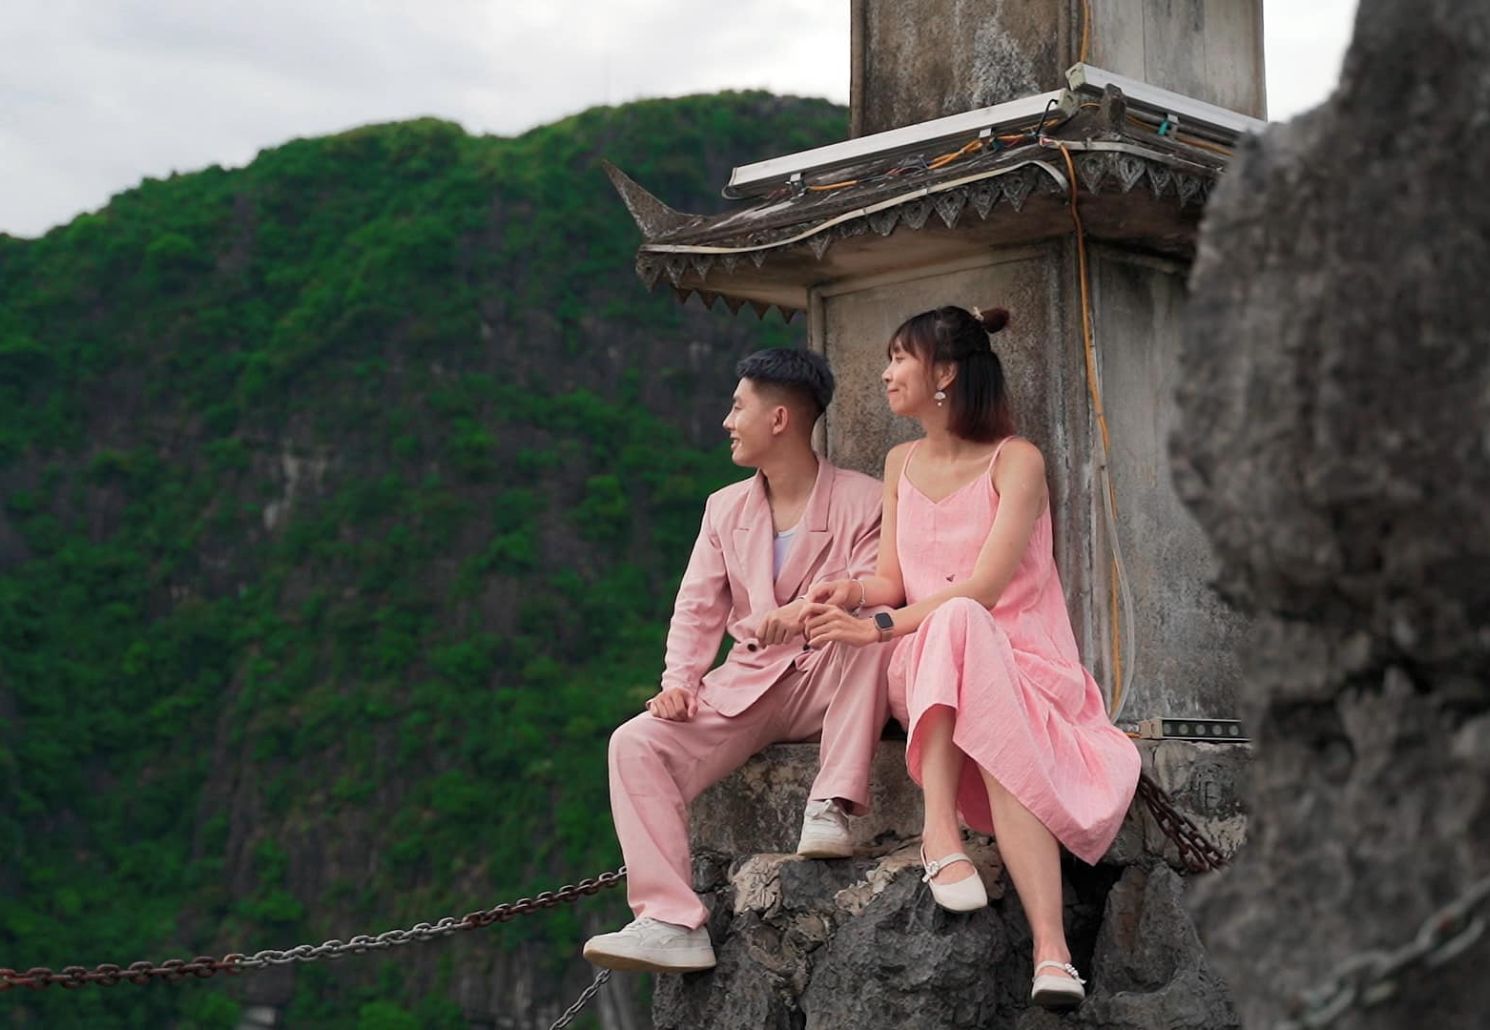 Hang Múa đẹp cực ngọt ngào trong bộ ảnh couple của cô nàng Ha Trinh 5